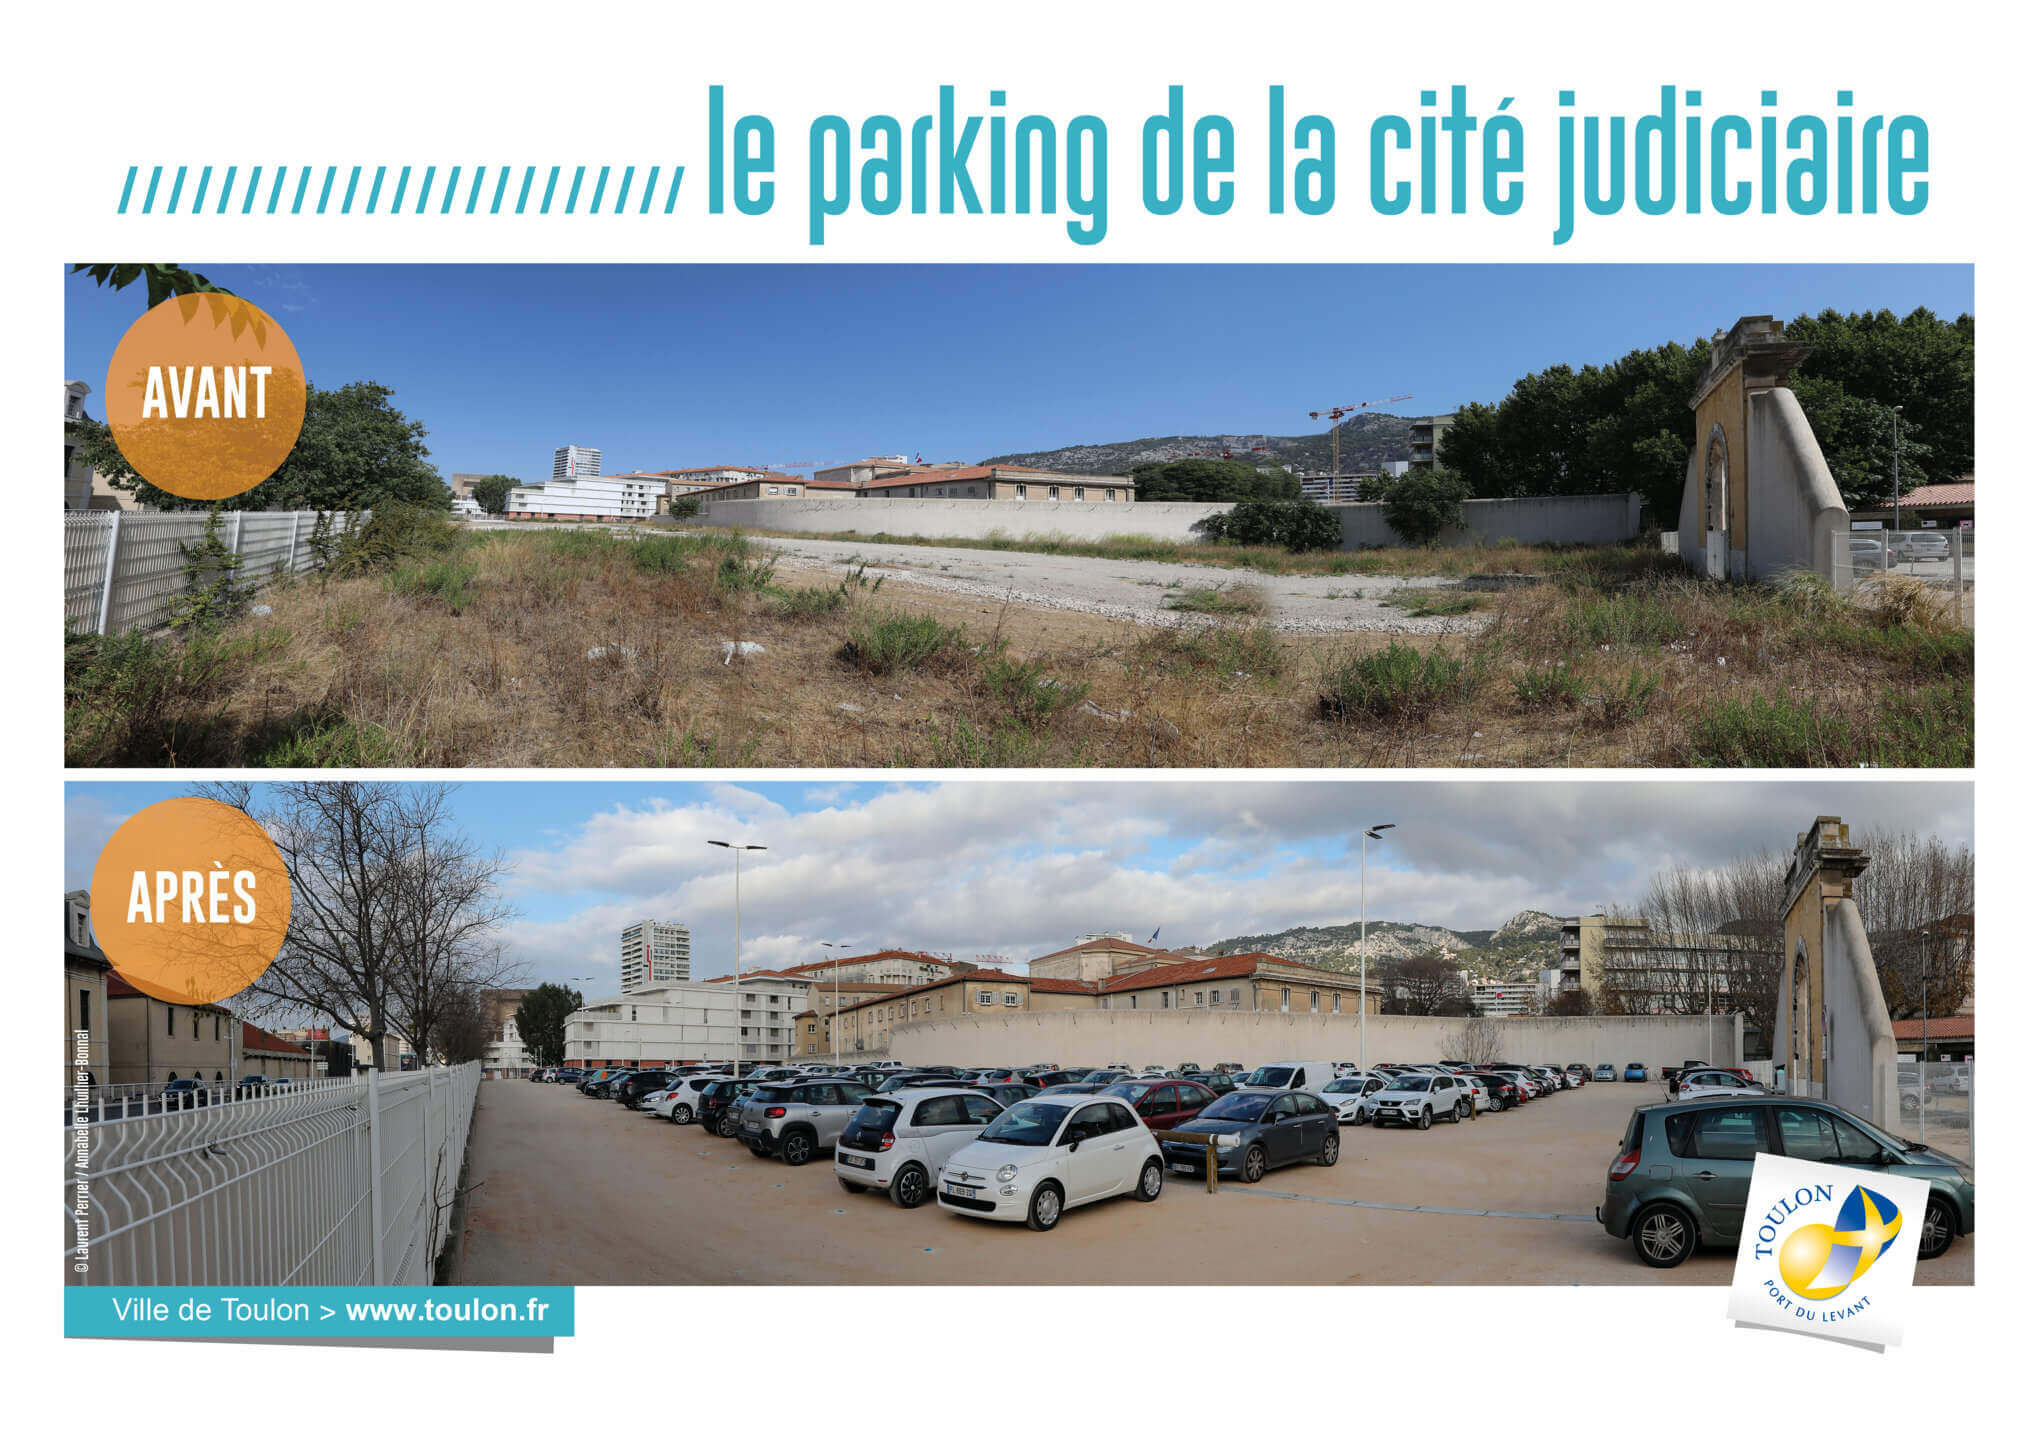 Le parking de la cité judiciaire